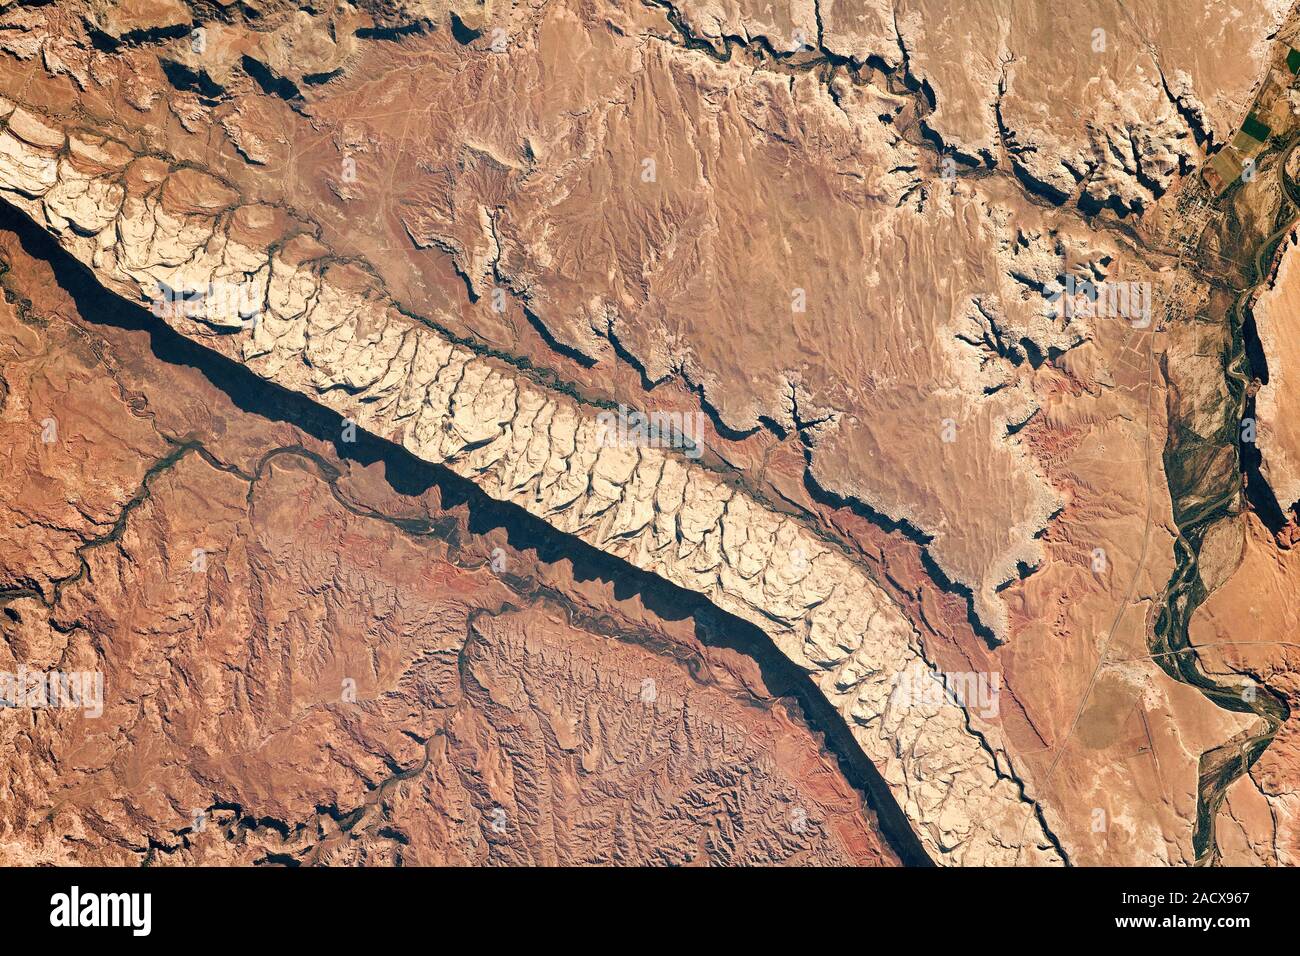 Comb Ridge Utah, USA NASA-Satellitenbild der Erde aus dem Weltraum Stockfoto